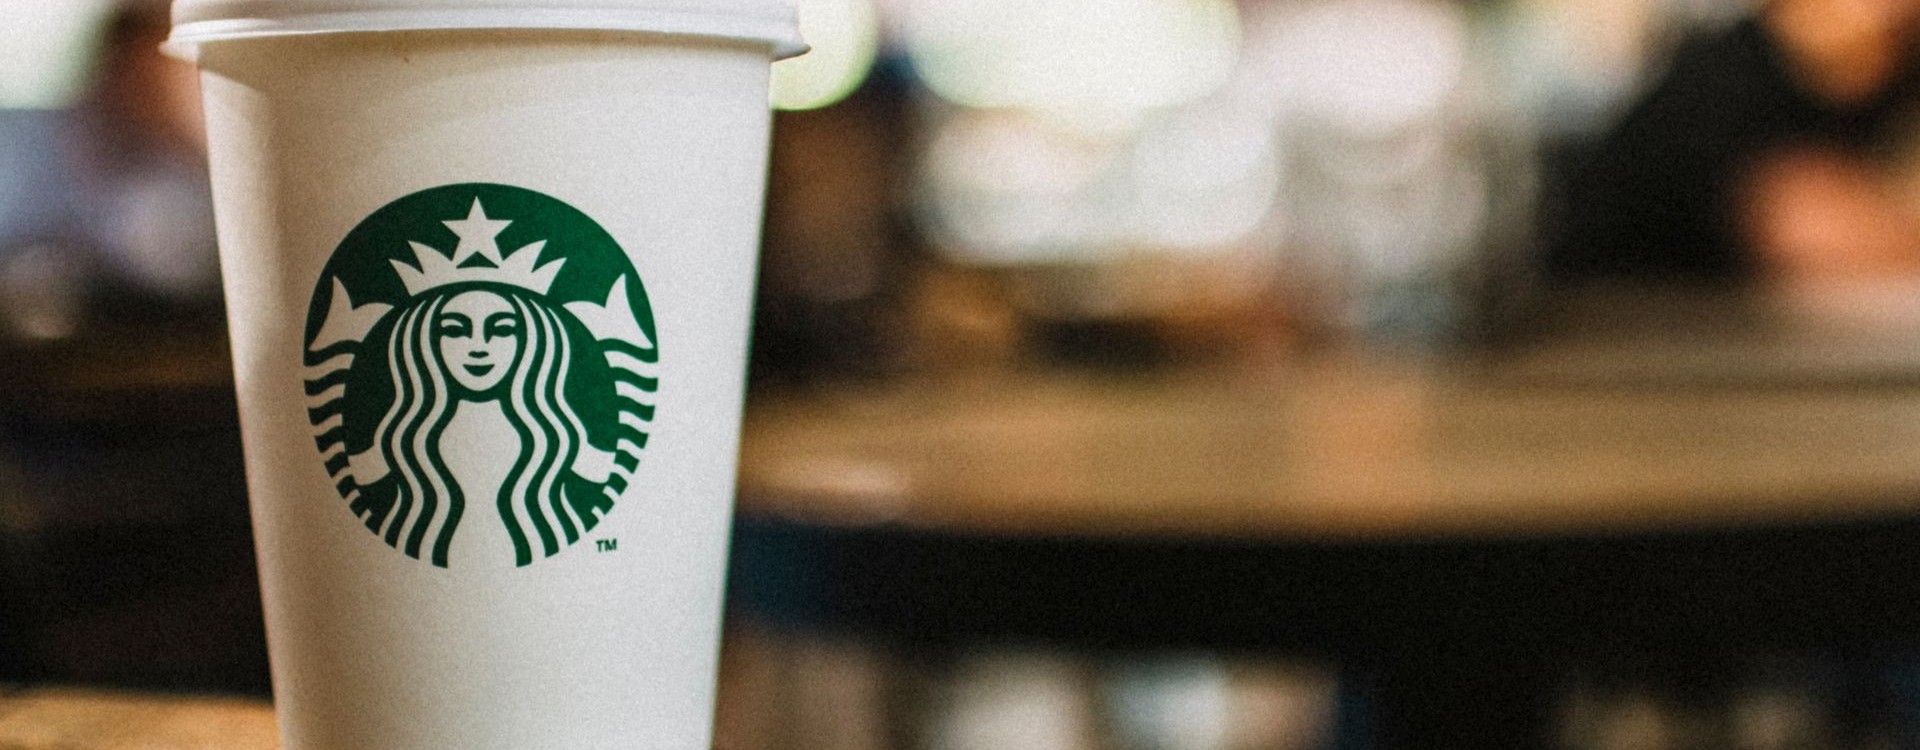 Η Starbucks: Η δύναμη πίσω από την παγκόσμια τάση του Καφέ